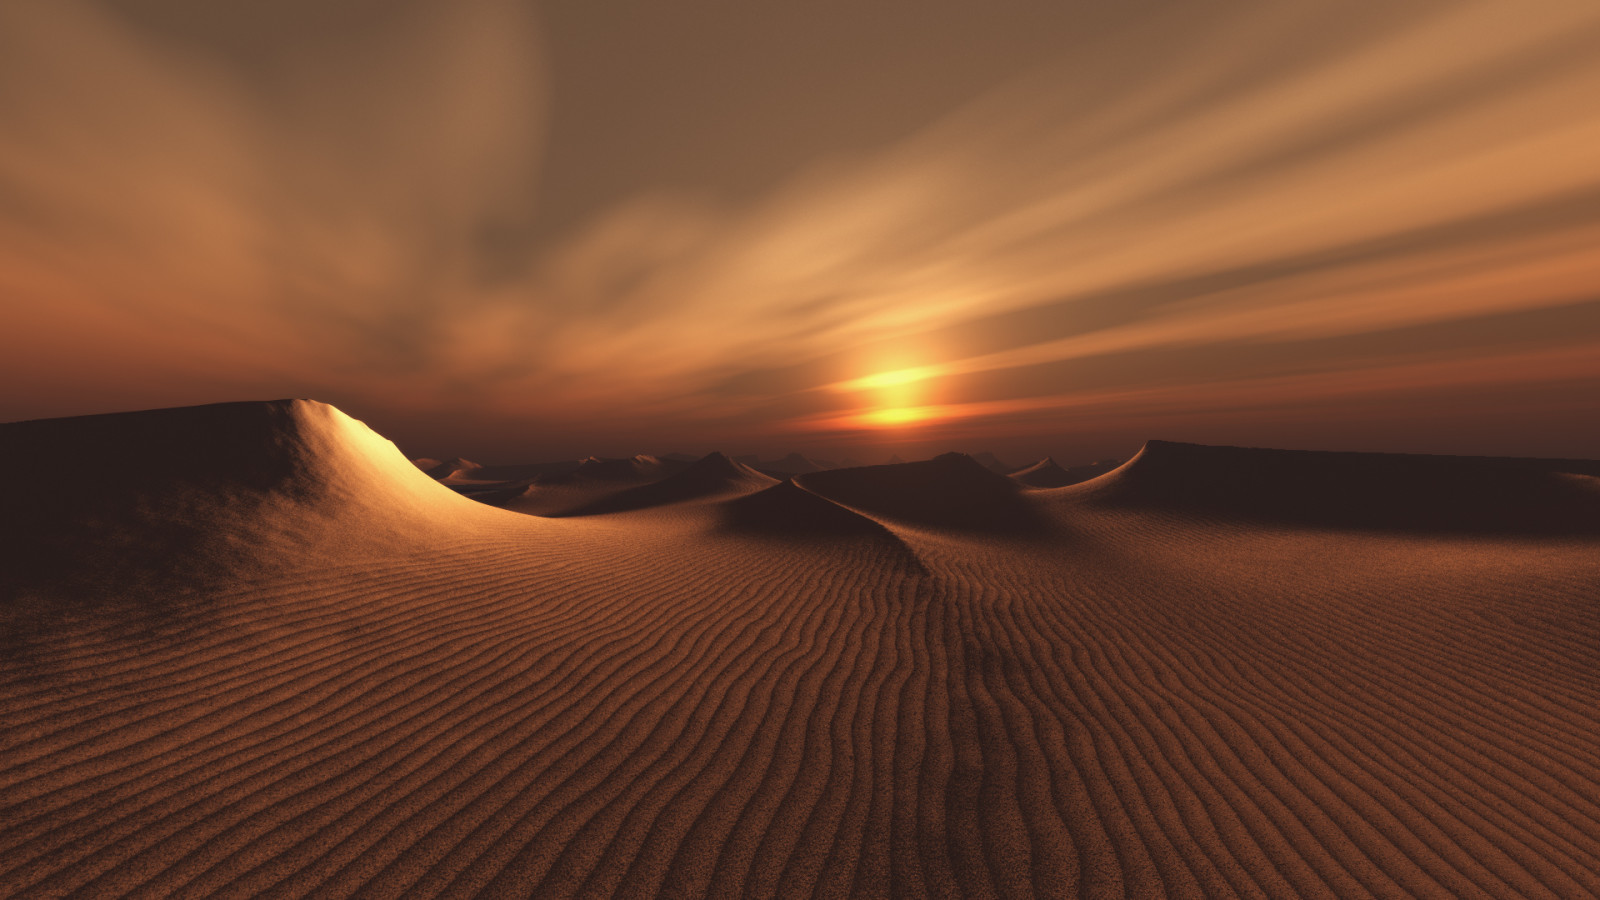 Sa mạc, mặt trời, cồn cát